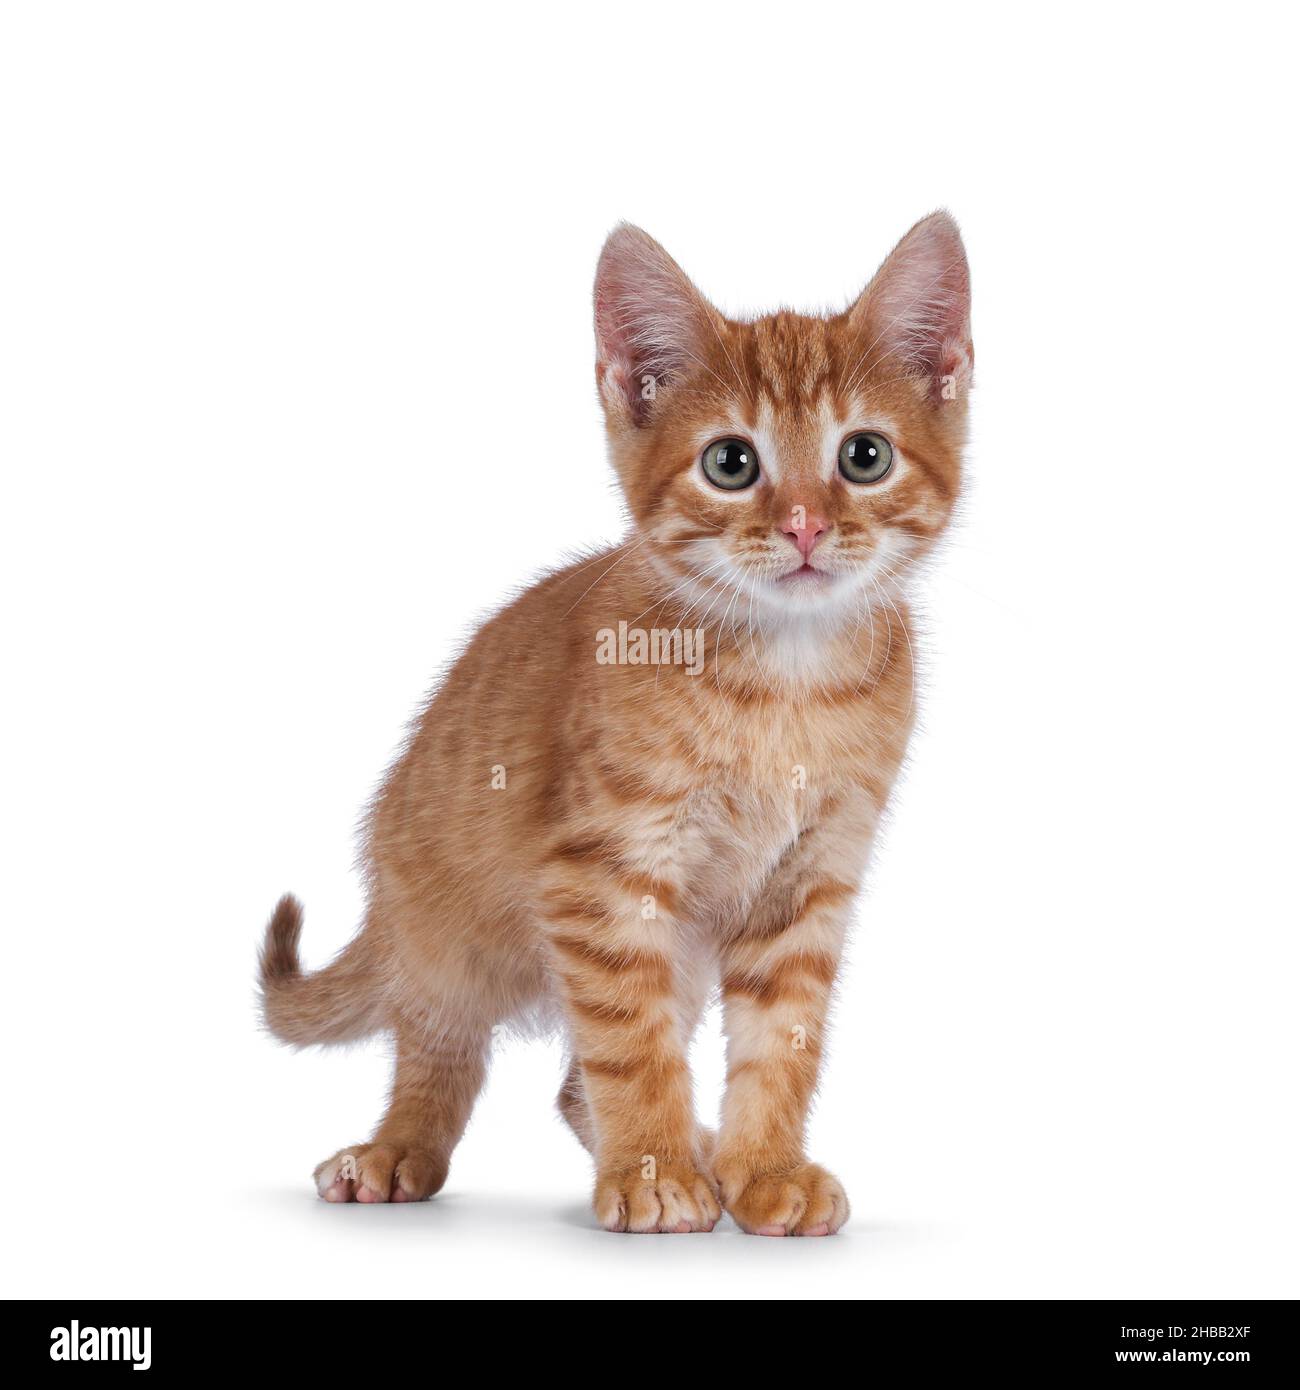 Joli petit chat rouge maison, debout face à l'avant.Regardant curieux vers l'appareil photo.Isolé sur un fond blanc. Banque D'Images